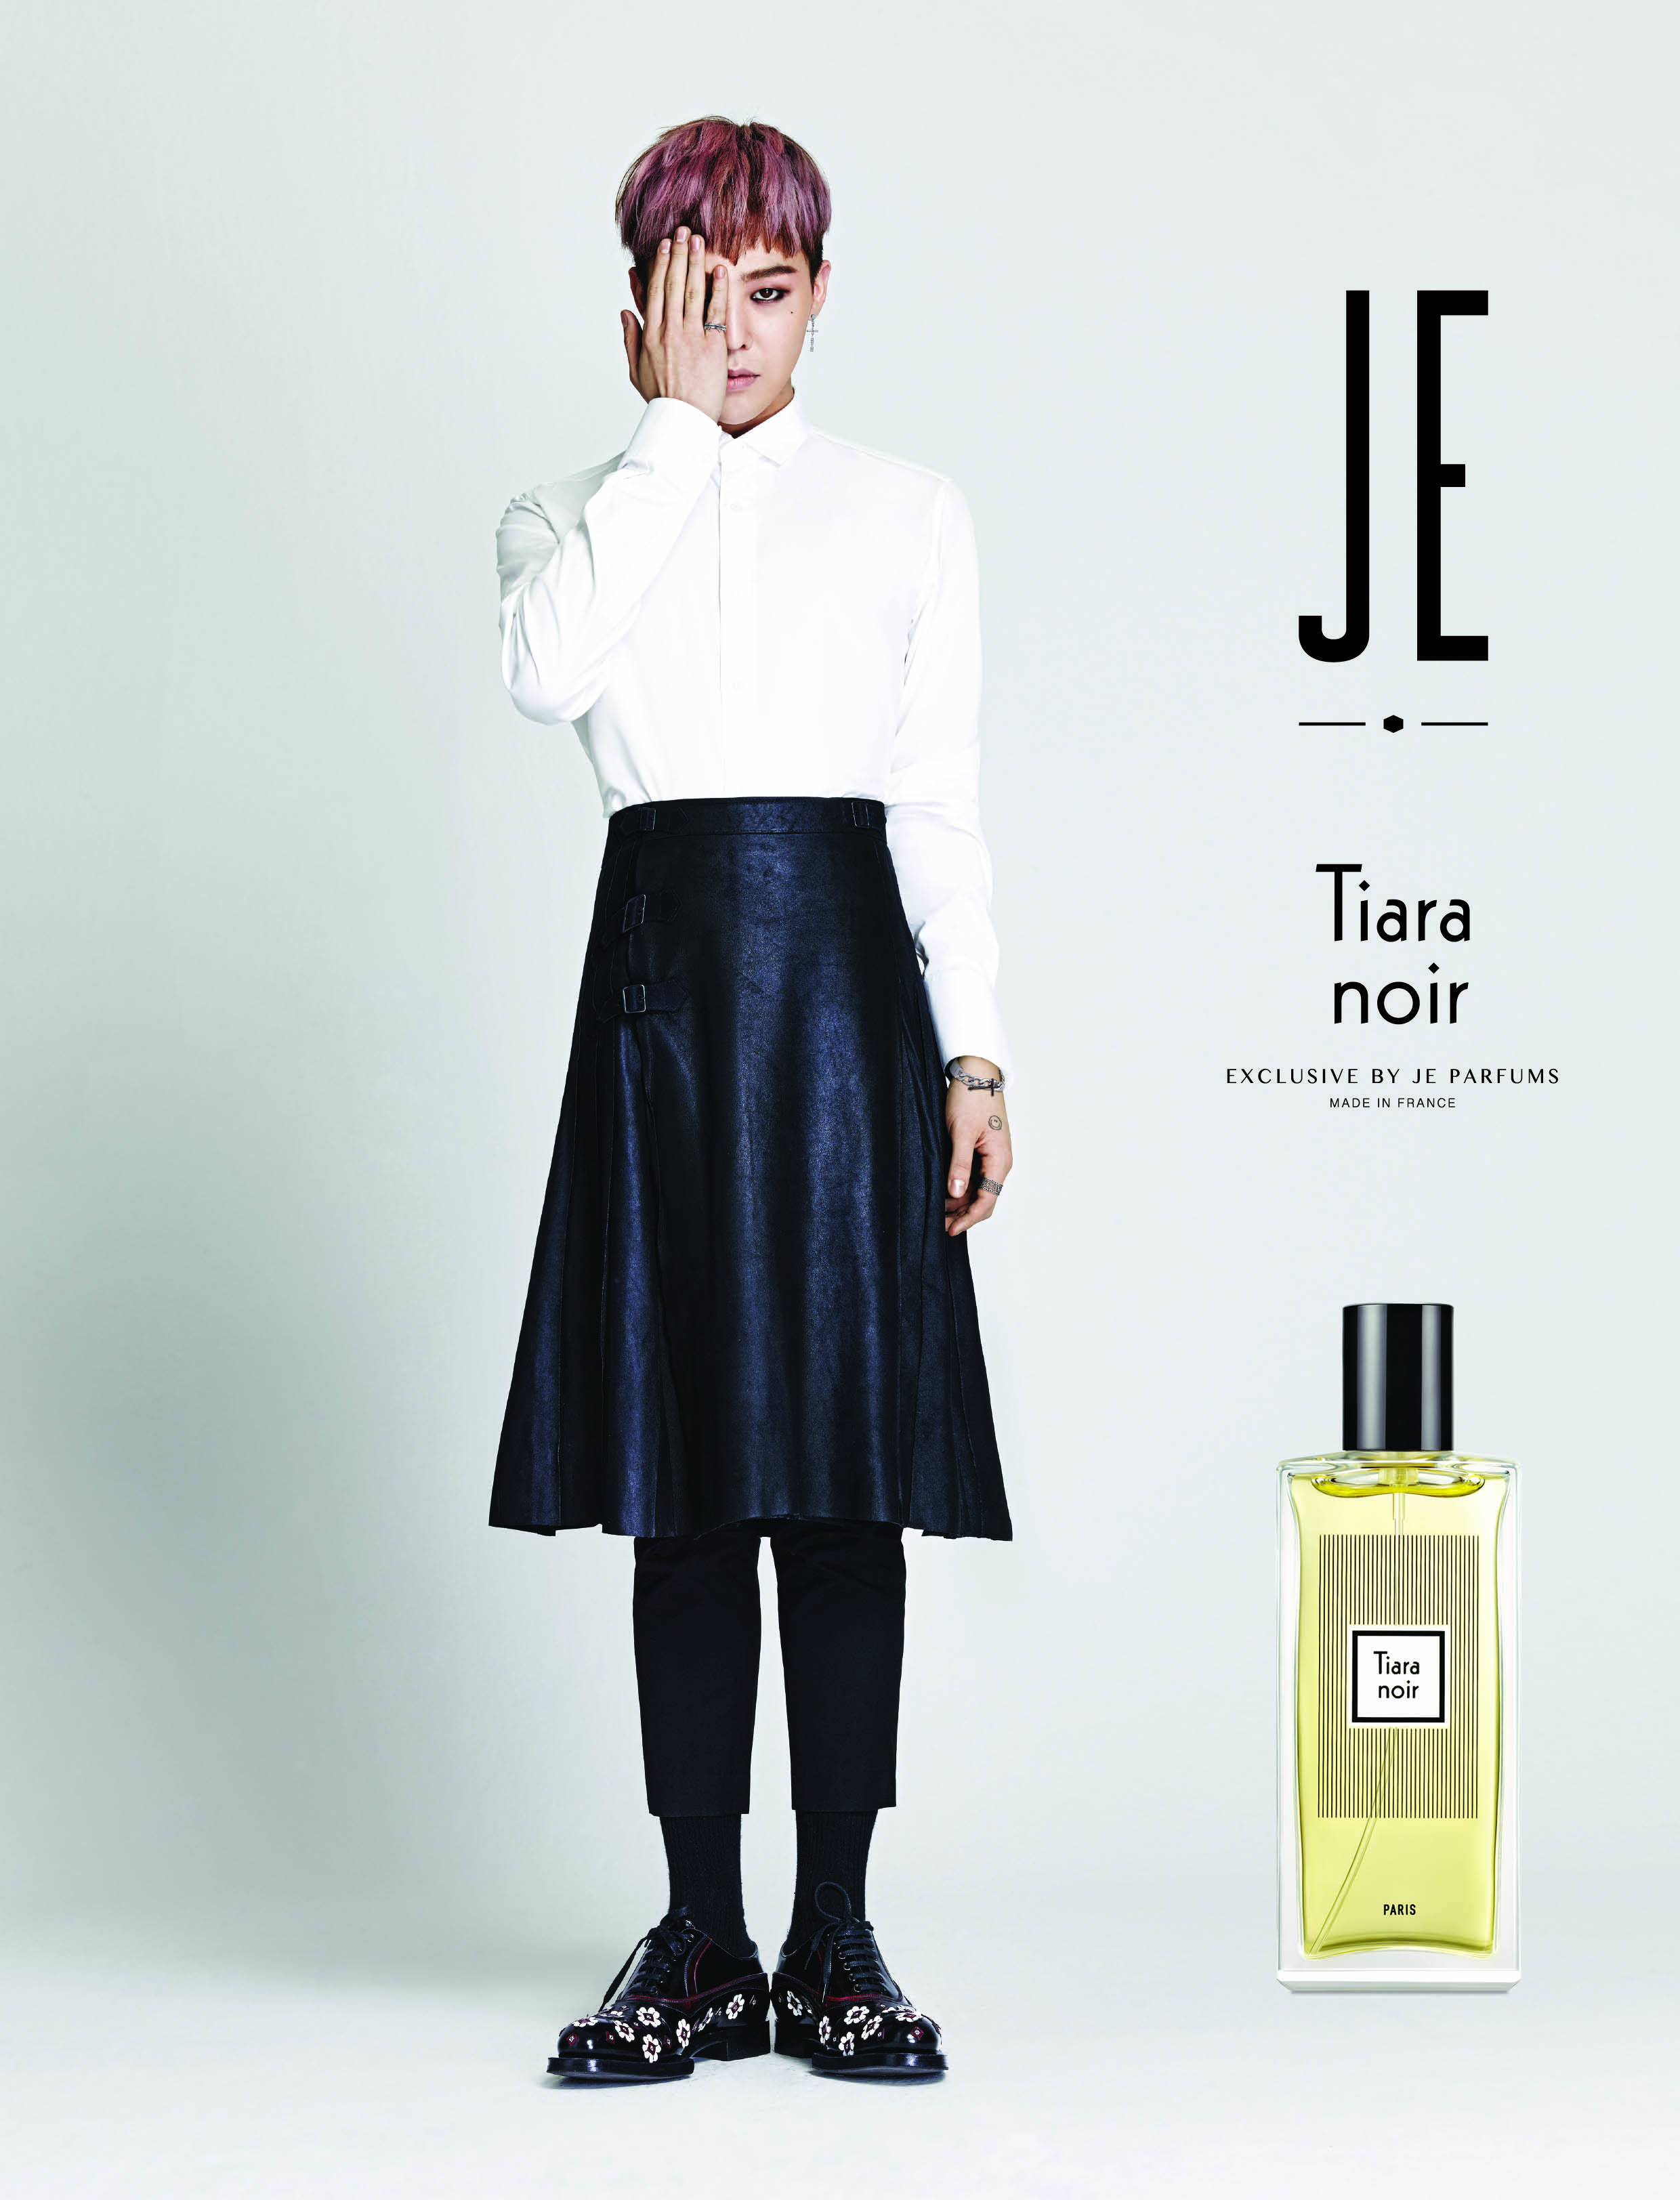 [배틀룩] 제이에스티나 향수 쥬 퍼퓸, '맛있는 향기 프로모션' 실시